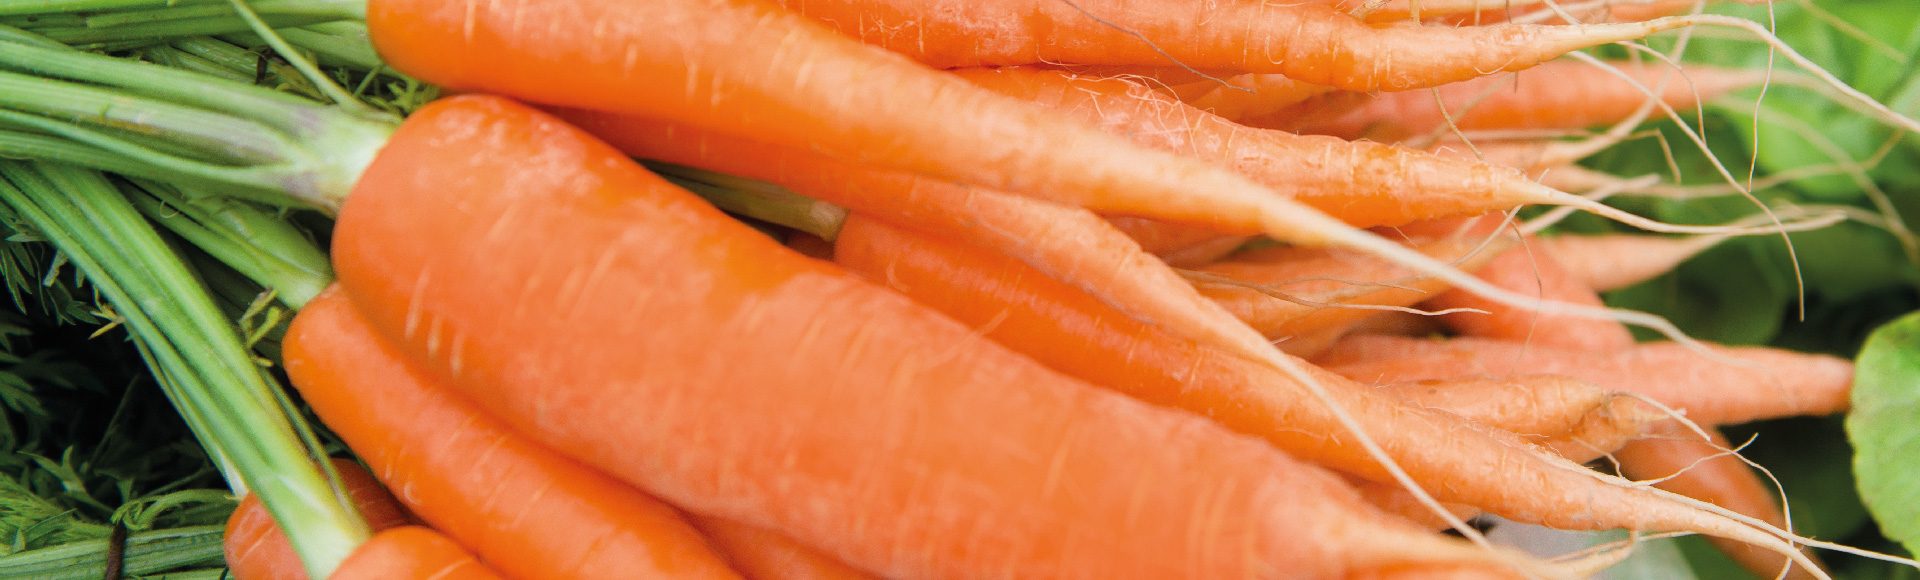 carrot fertiliser header